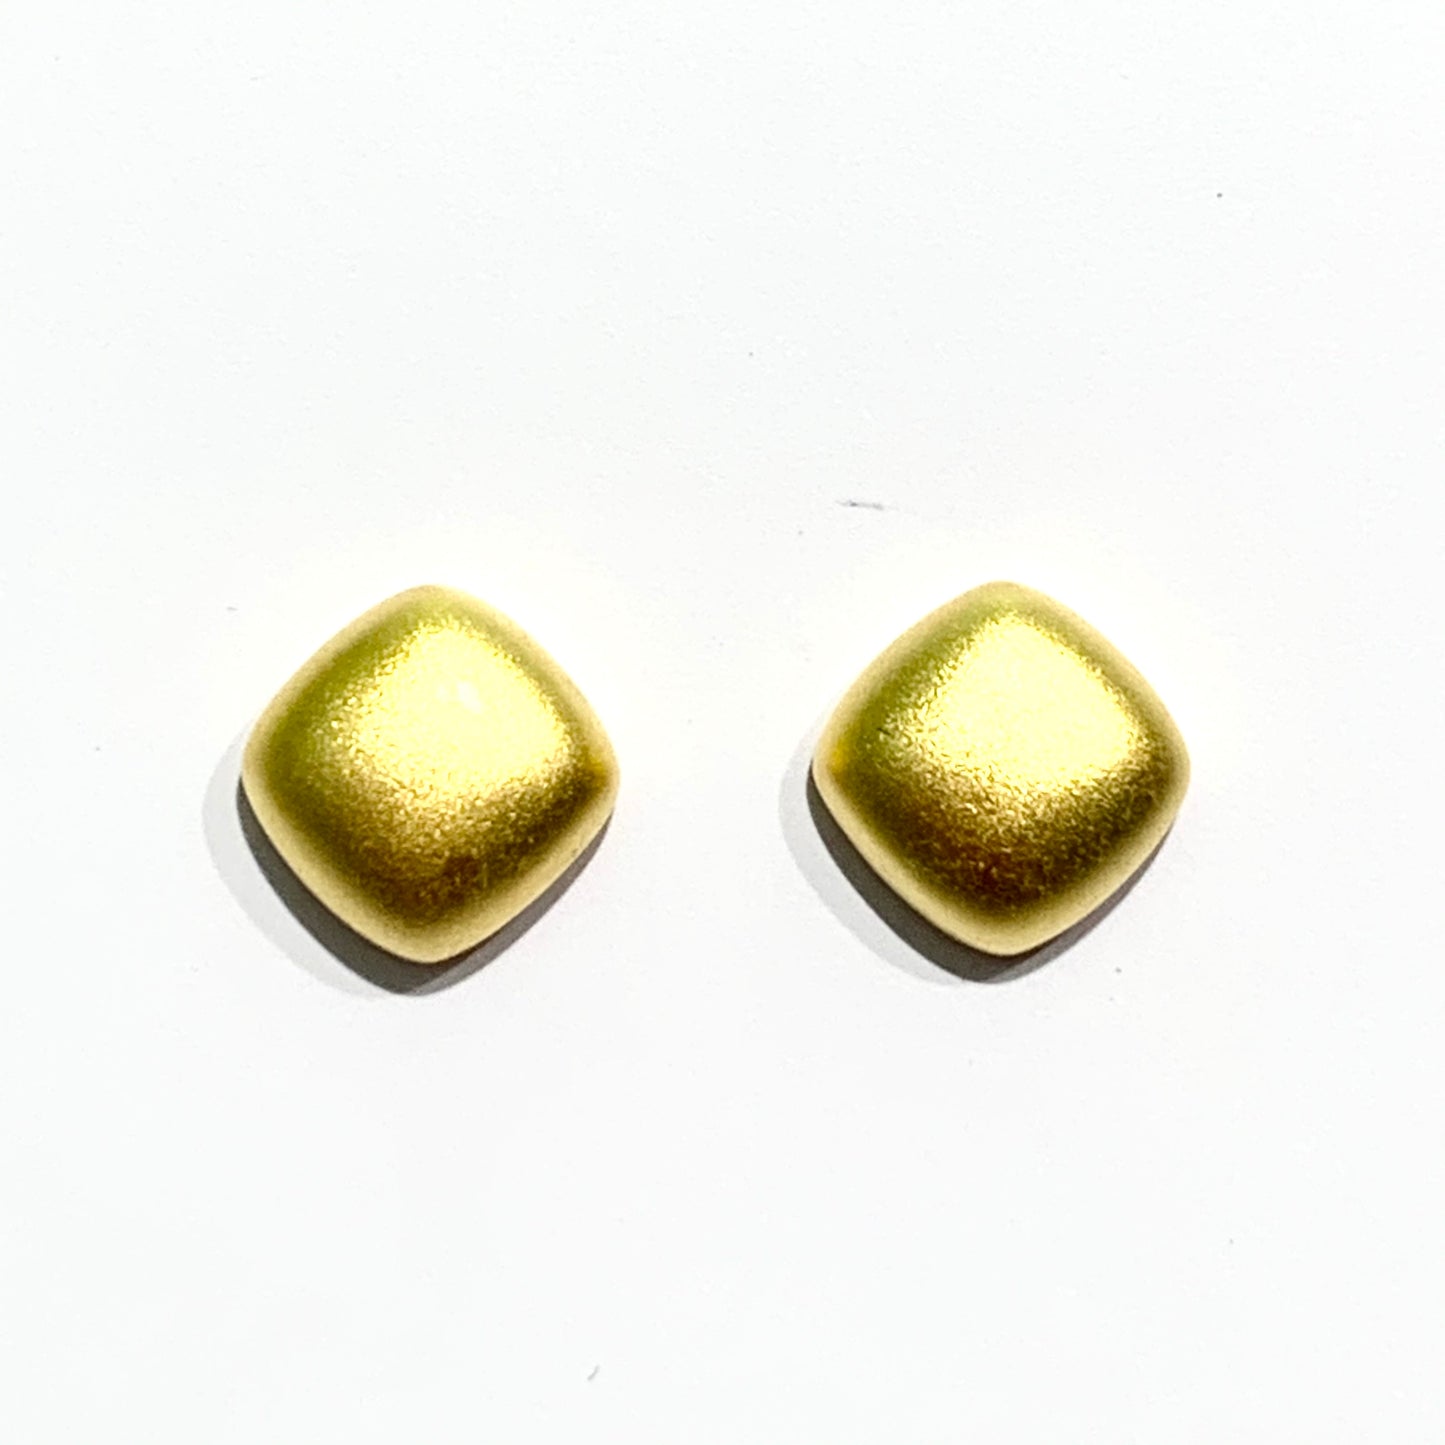 Orecchini in argento bagnato nell'oro giallo con effetto satinato a forma di quadrato.  Dimensione 0,8 cm.  Chiusura a farfallina.  Spedizione gratuita con confezione regalo. 